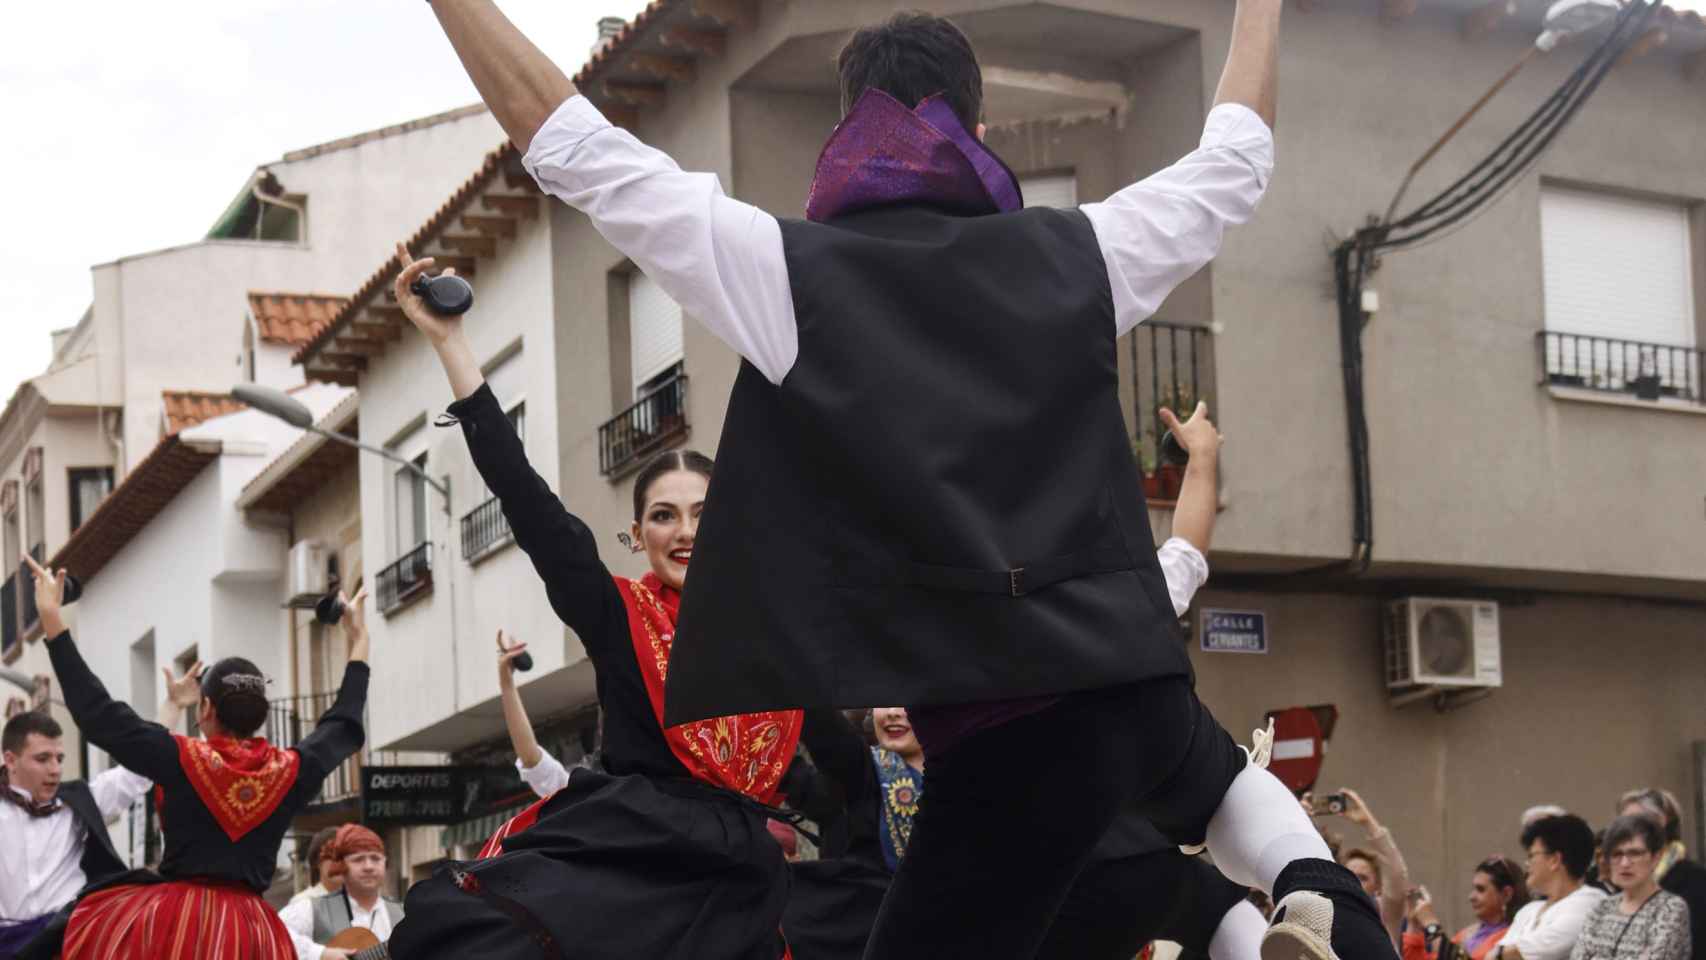 Festival de Mayos en Pedro Muñoz.